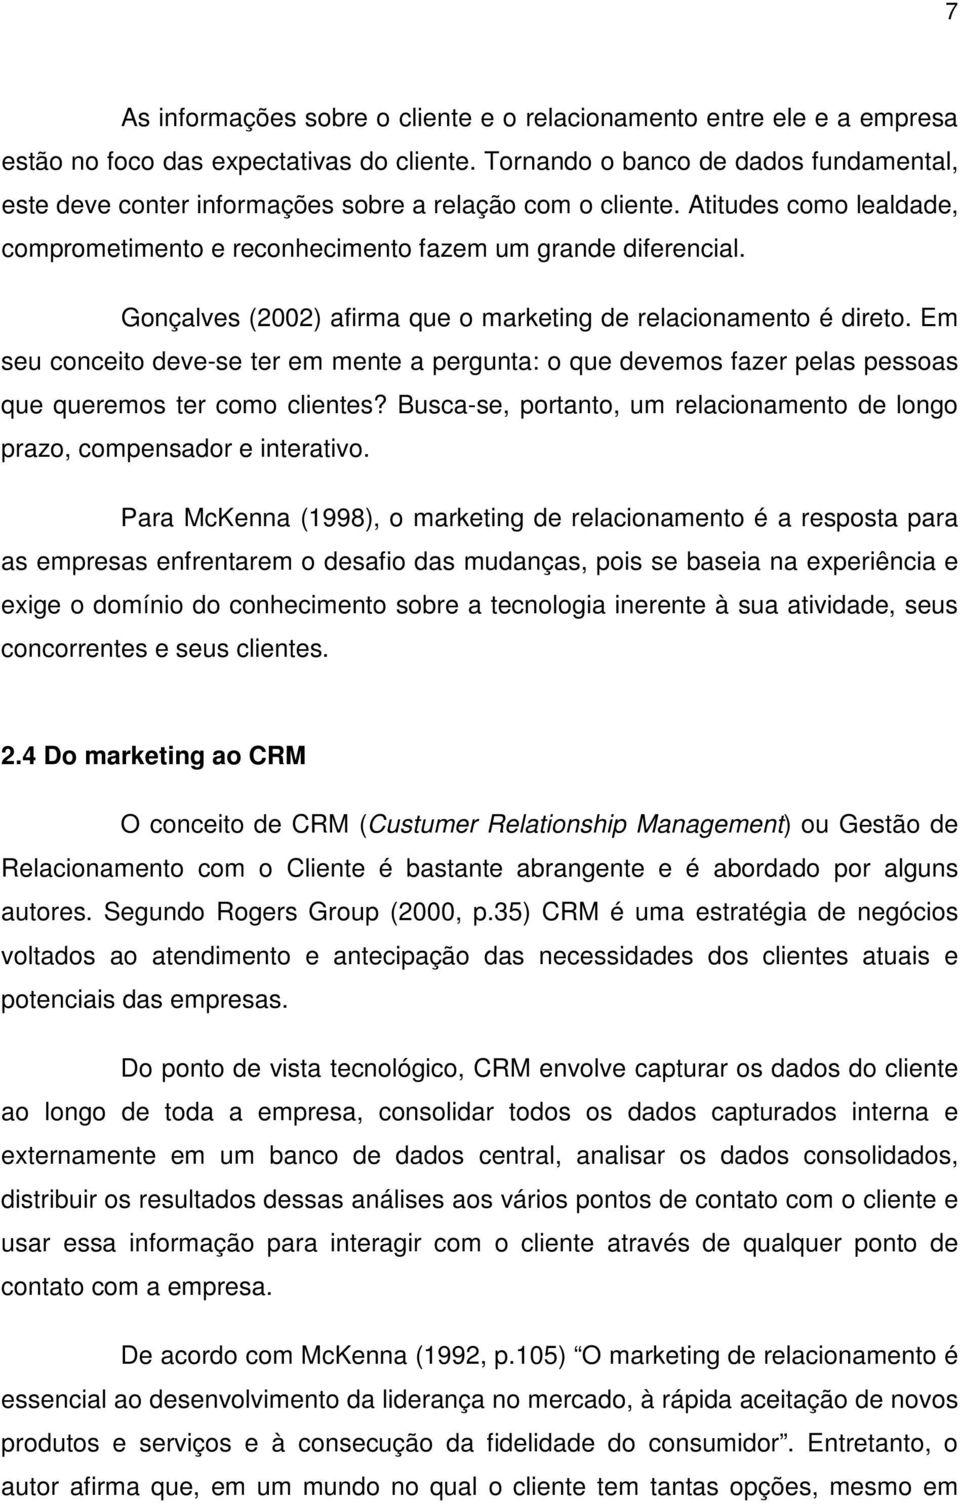 Gonçalves (2002) afirma que o marketing de relacionamento é direto. Em seu conceito deve-se ter em mente a pergunta: o que devemos fazer pelas pessoas que queremos ter como clientes?